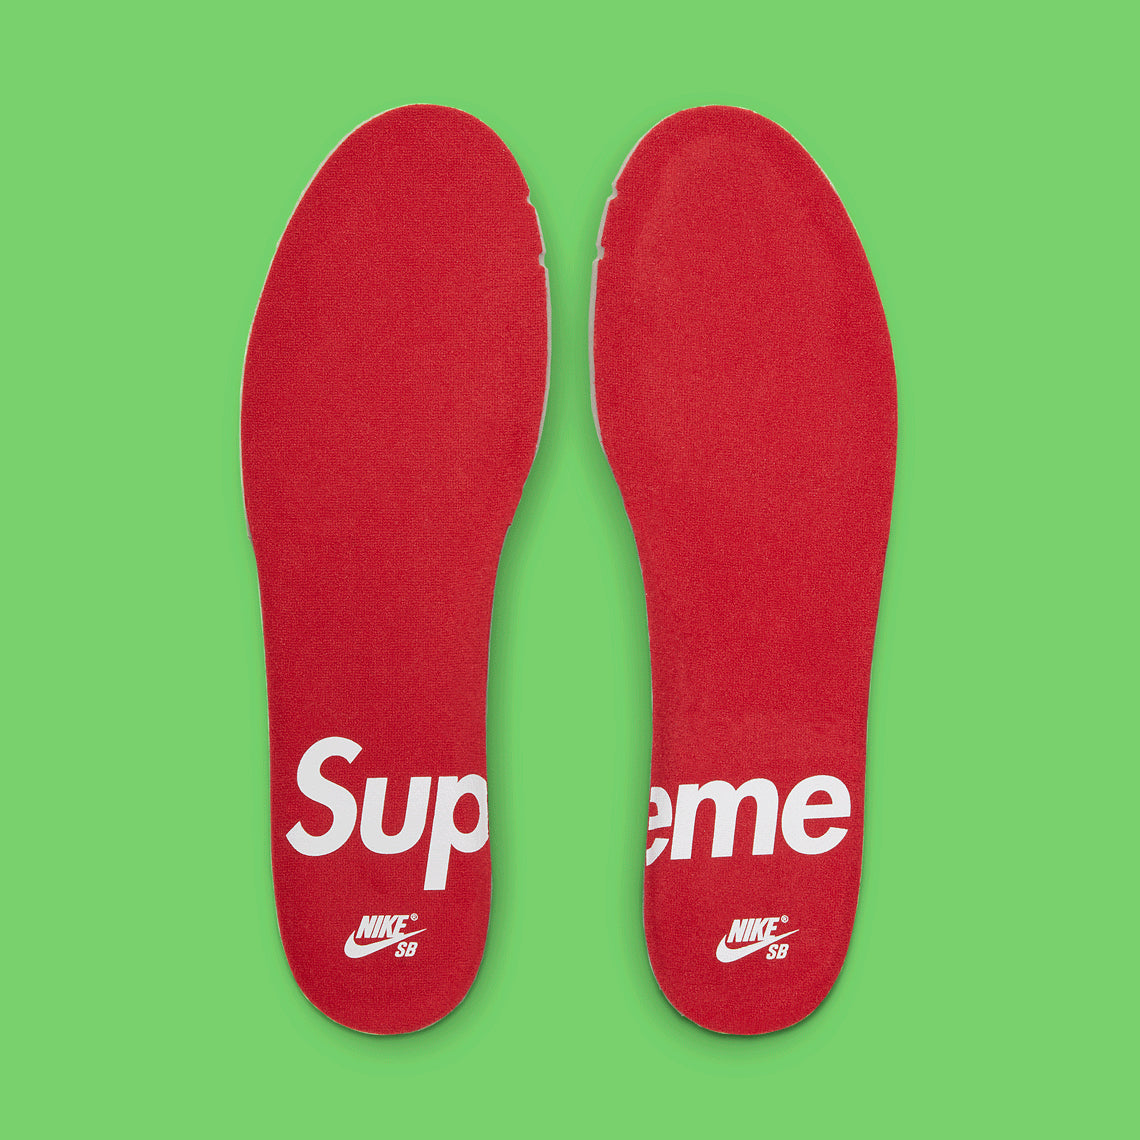 Nike SB Dunk Low x Supreme “Mean Green”